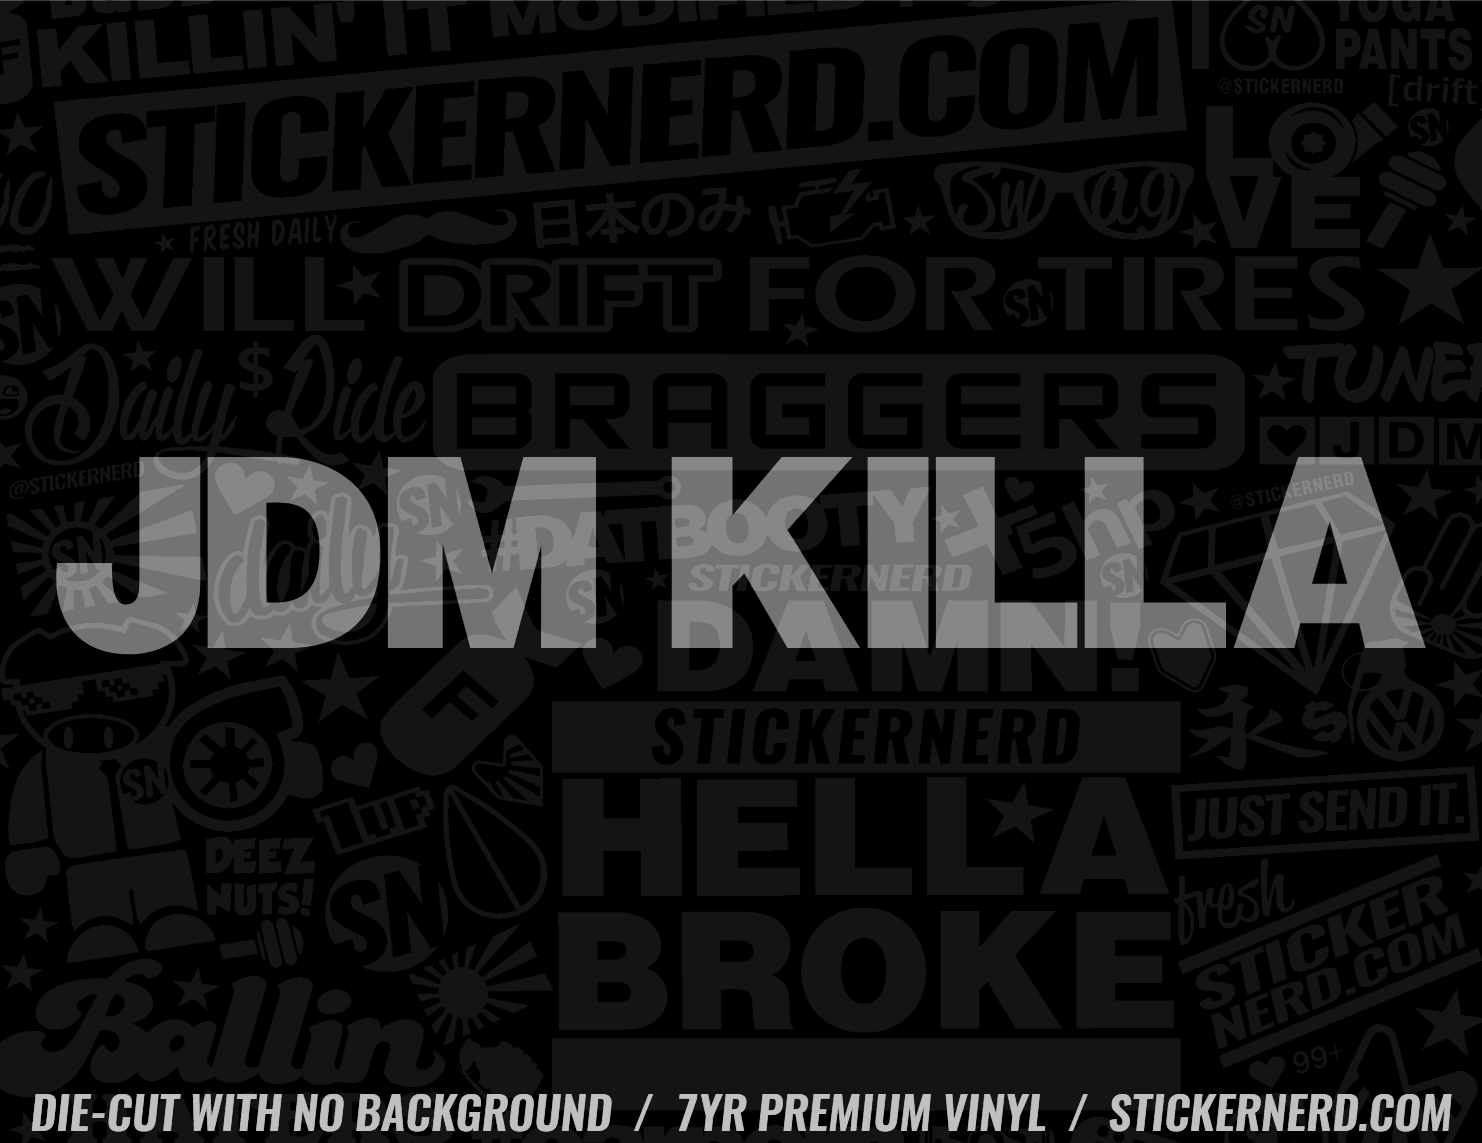 JDM Killa Sticker - Decal - STICKERNERD.COM